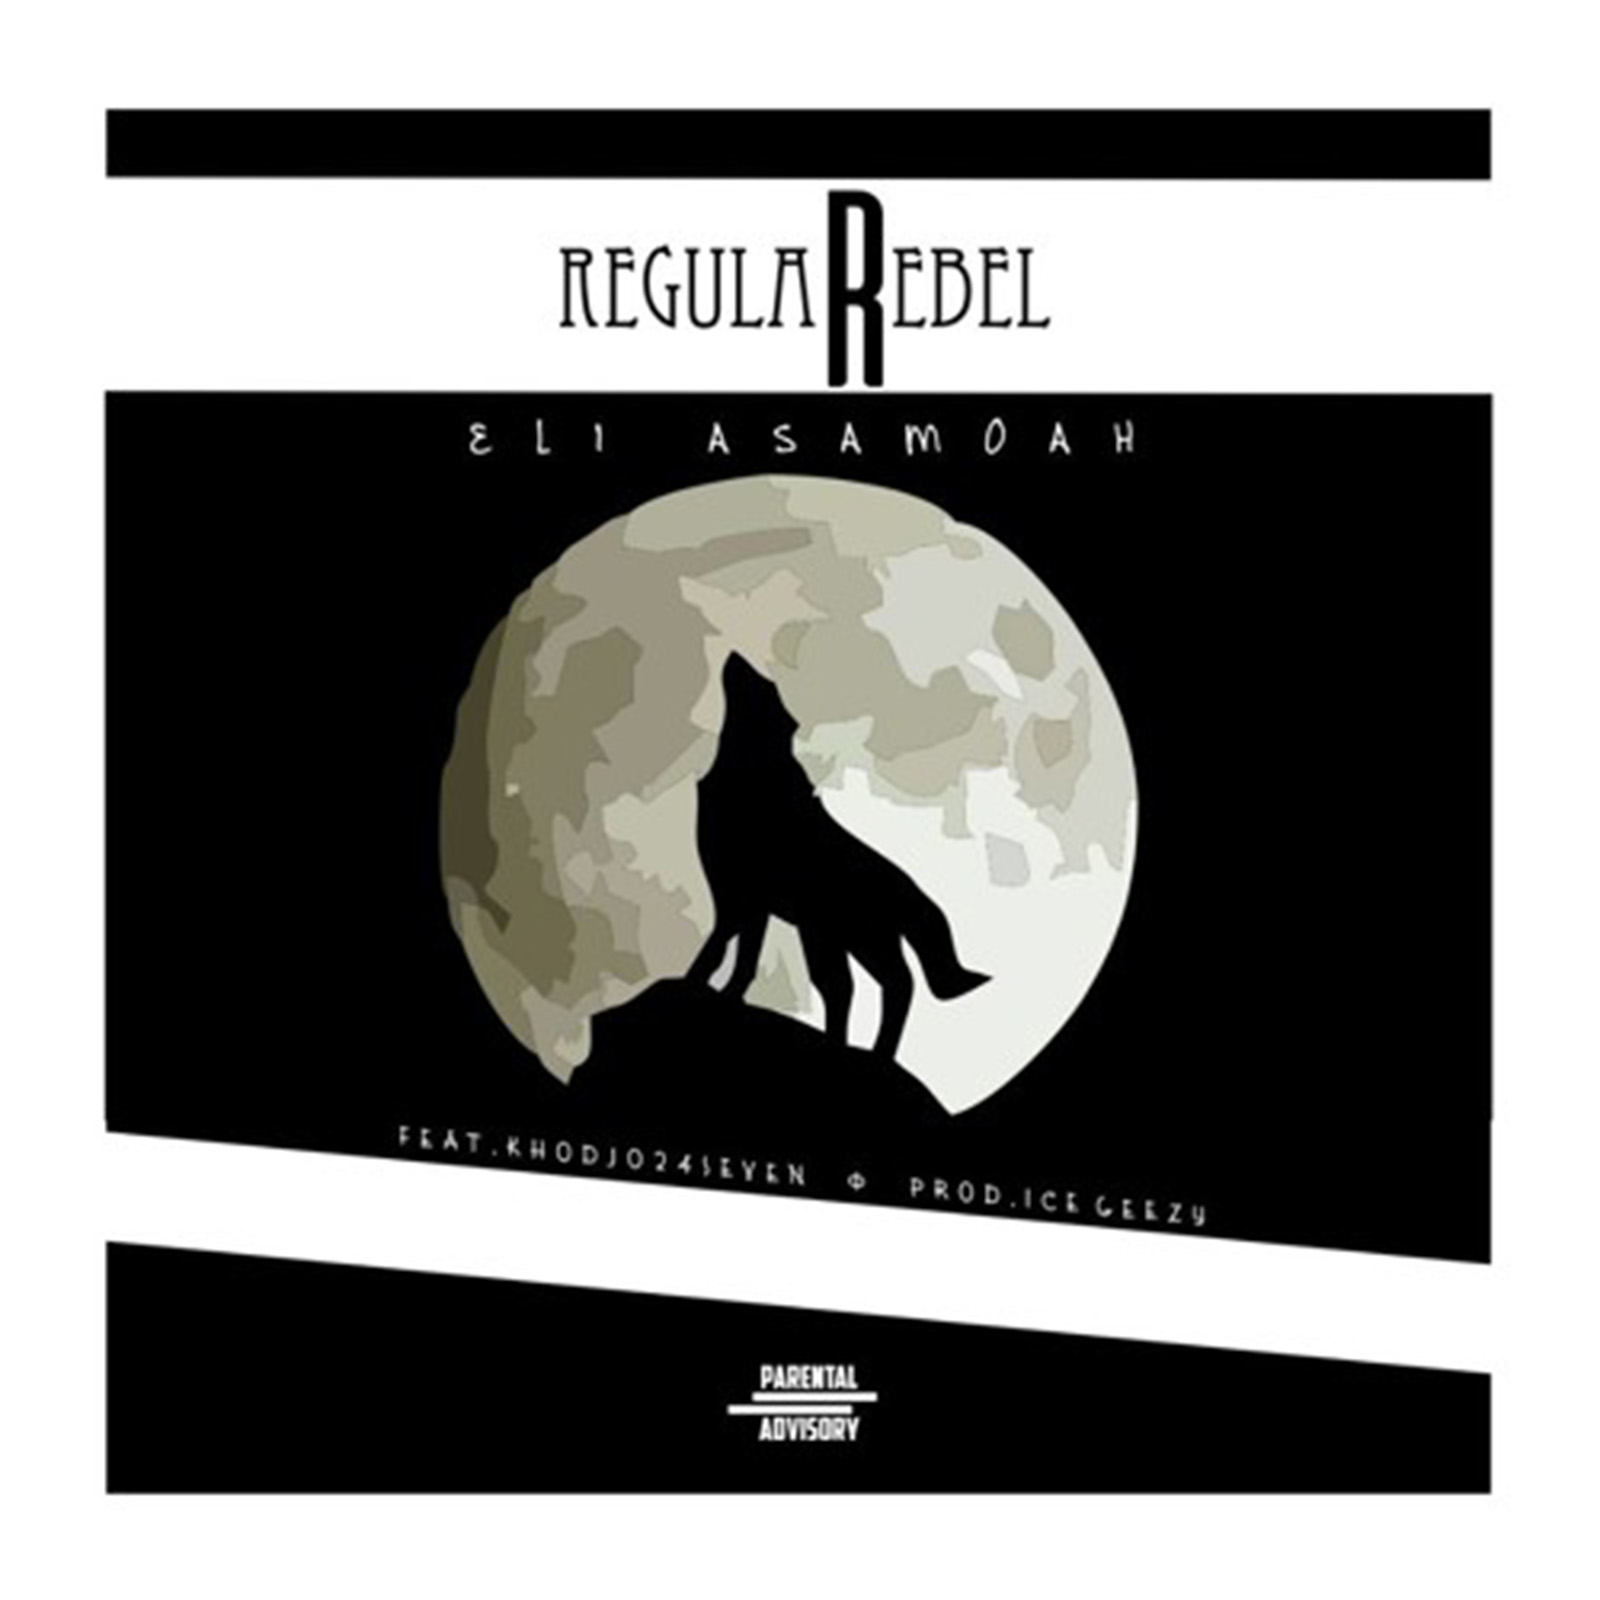 Regular Rebel by Eli Asamoah feat. Khodjo 24Seven